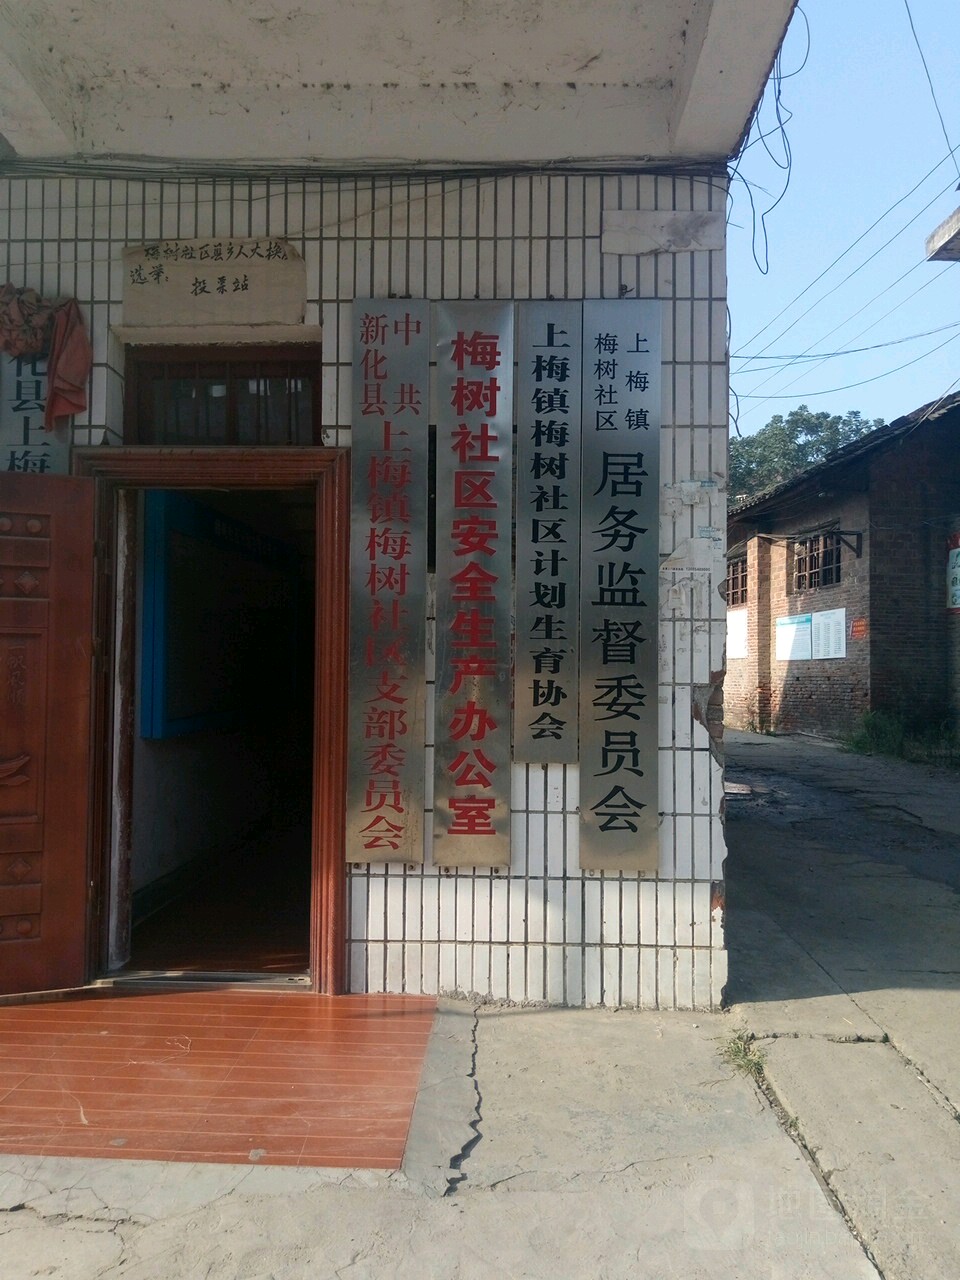 上梅鎮梅樹社區計劃生育協會